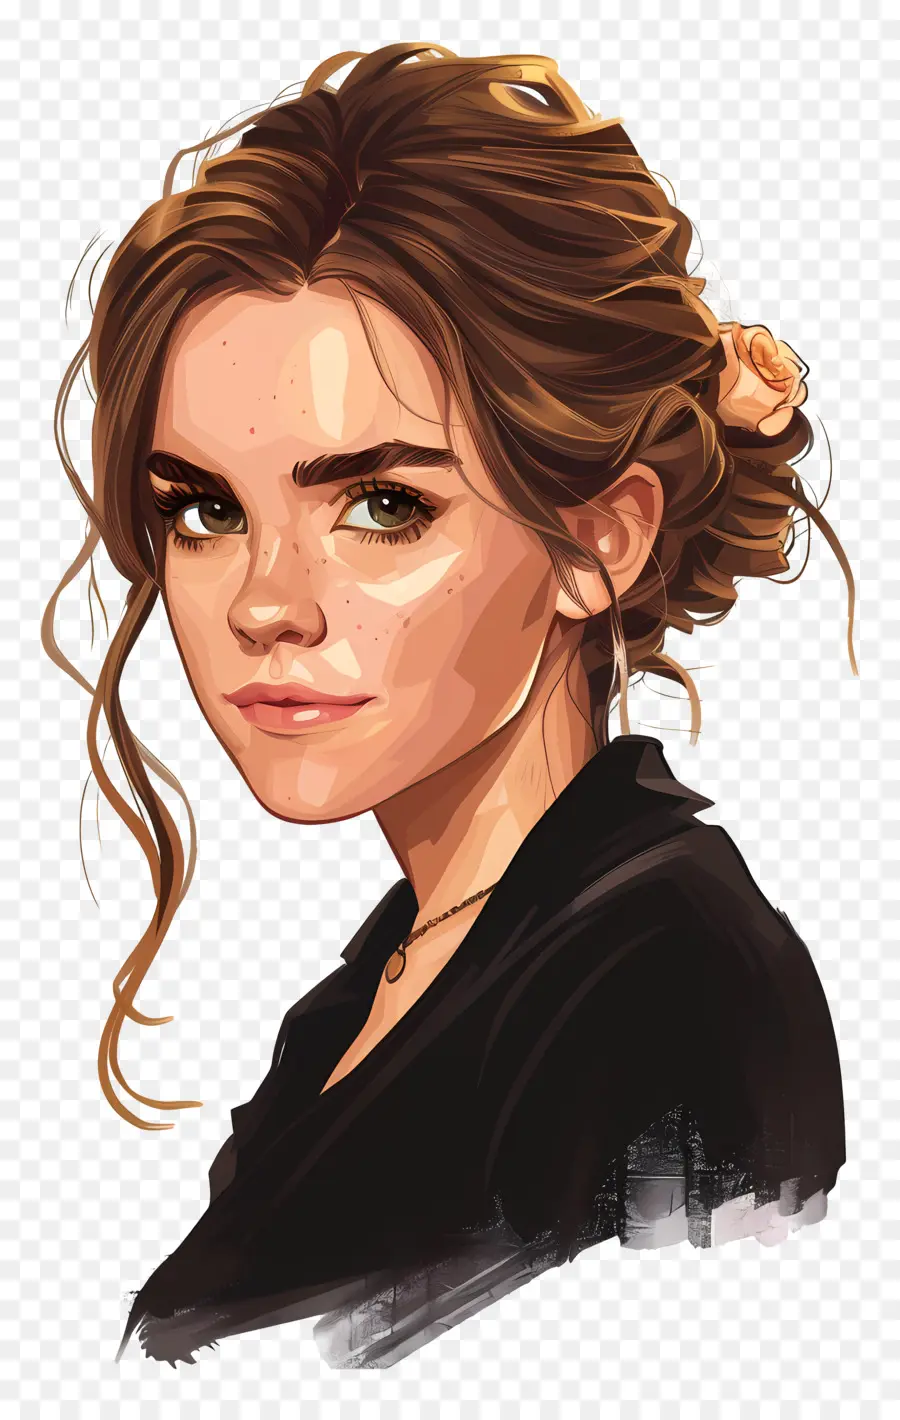 Emma Watson Digital Art Woman Tóc nâu Áo sơ mi đen - Bức tranh kỹ thuật số của người phụ nữ với mái tóc nâu